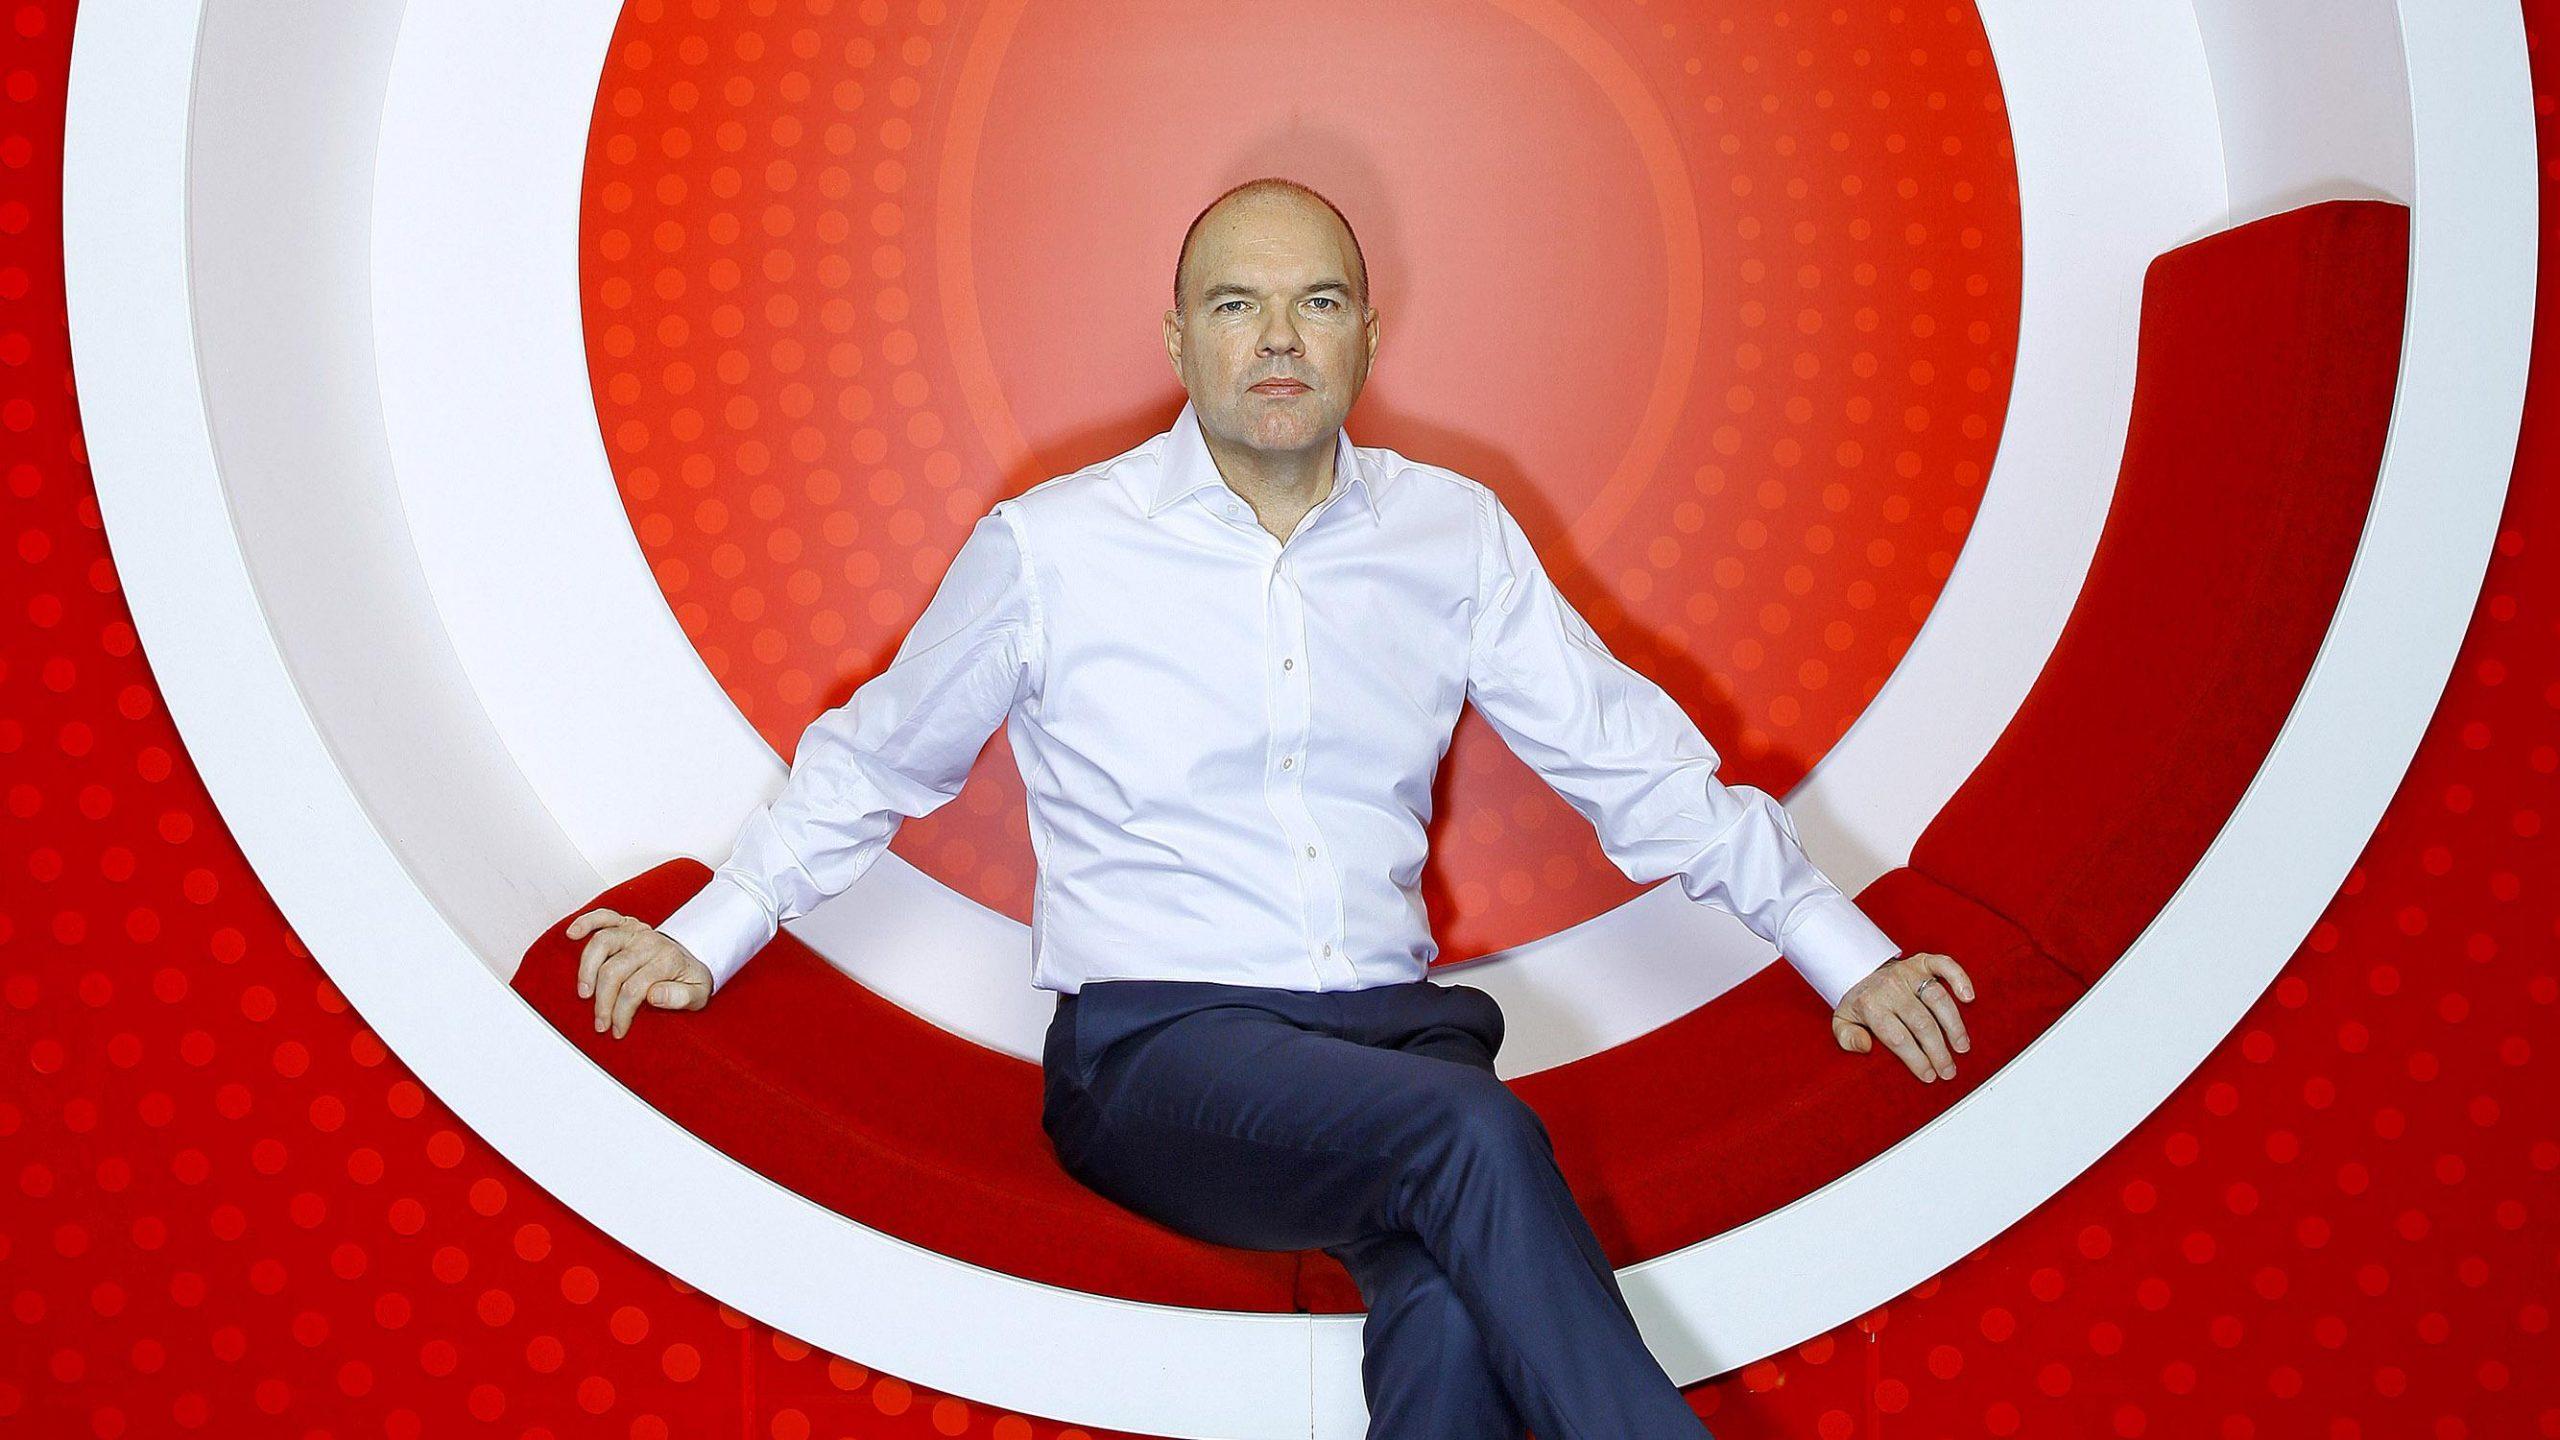 Nick Read, a Vodafone vezérigazgatója szerint a magyar kormány stratégiája világos